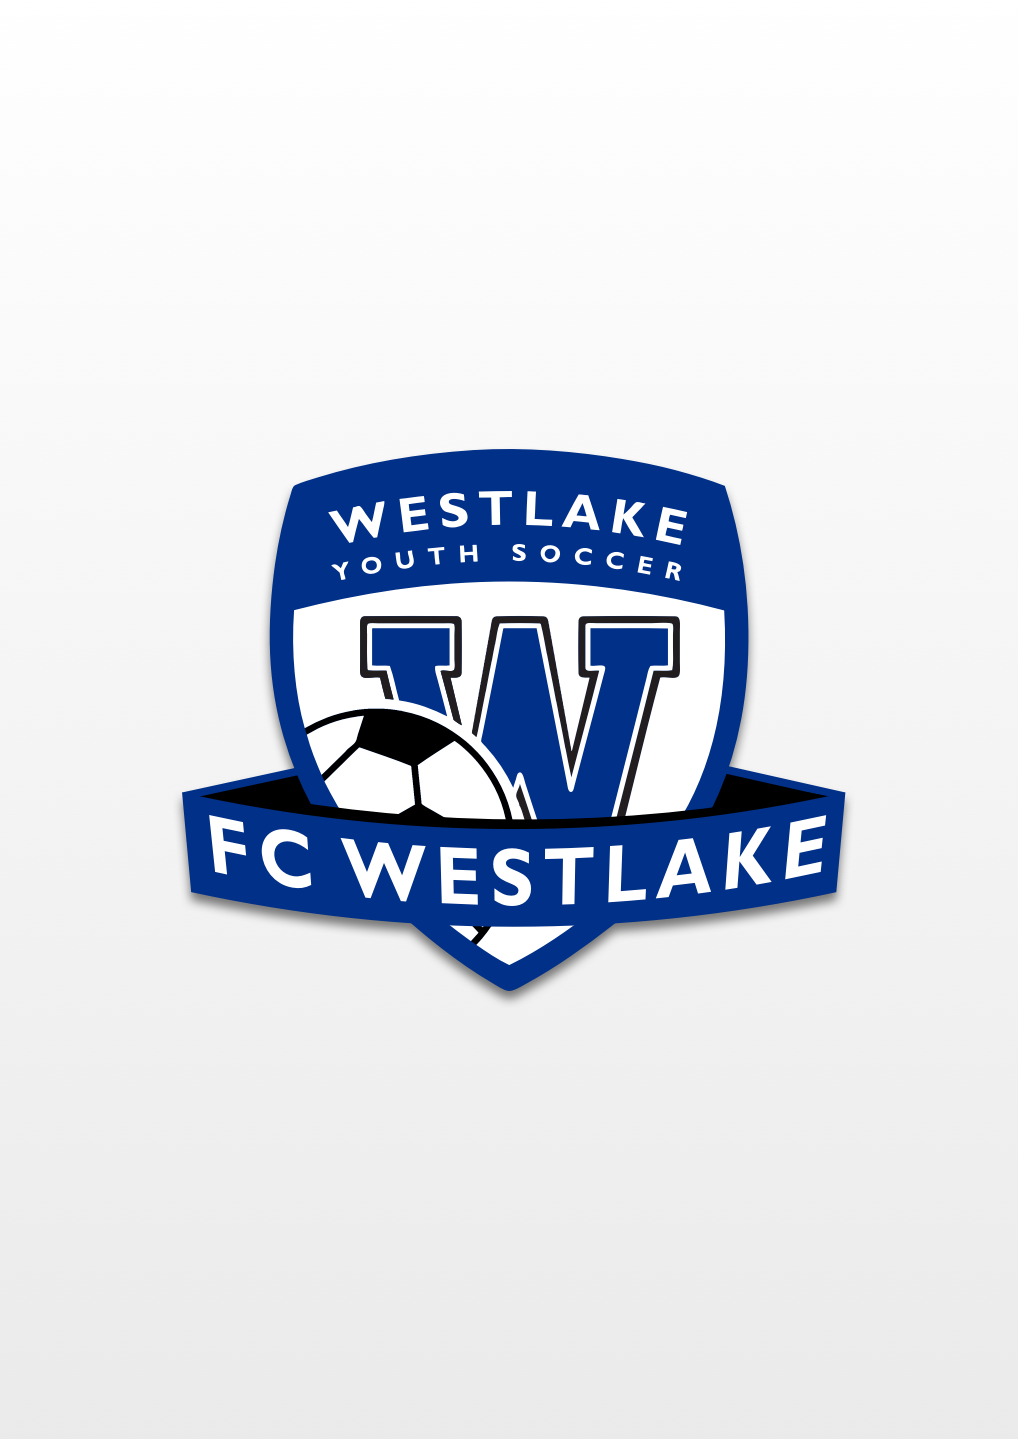 Goalkeeper Archives - FC Westlake